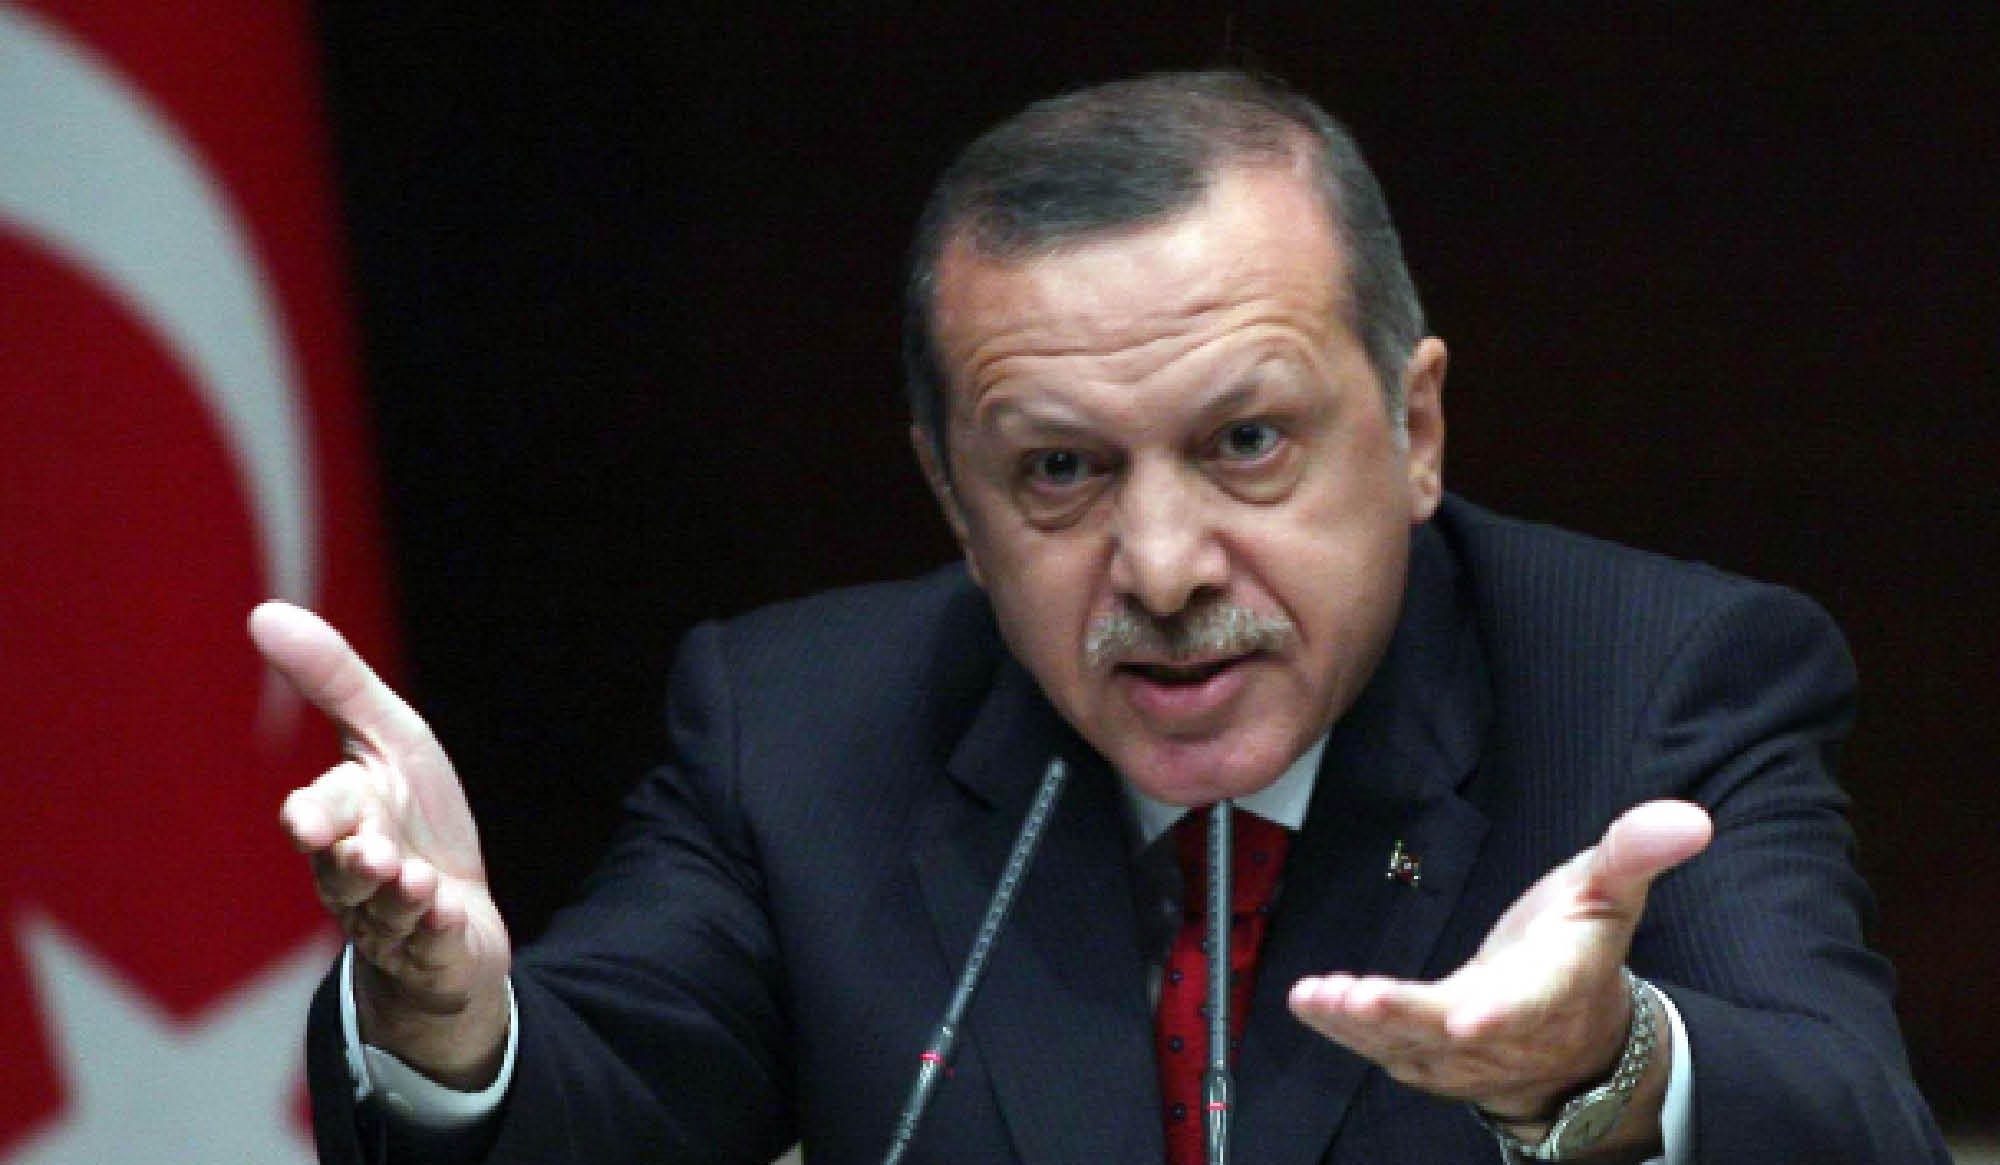   متقمصا شخصية القذافى .. أردوغان للمطالبين باغتياله: “من أنتم؟”